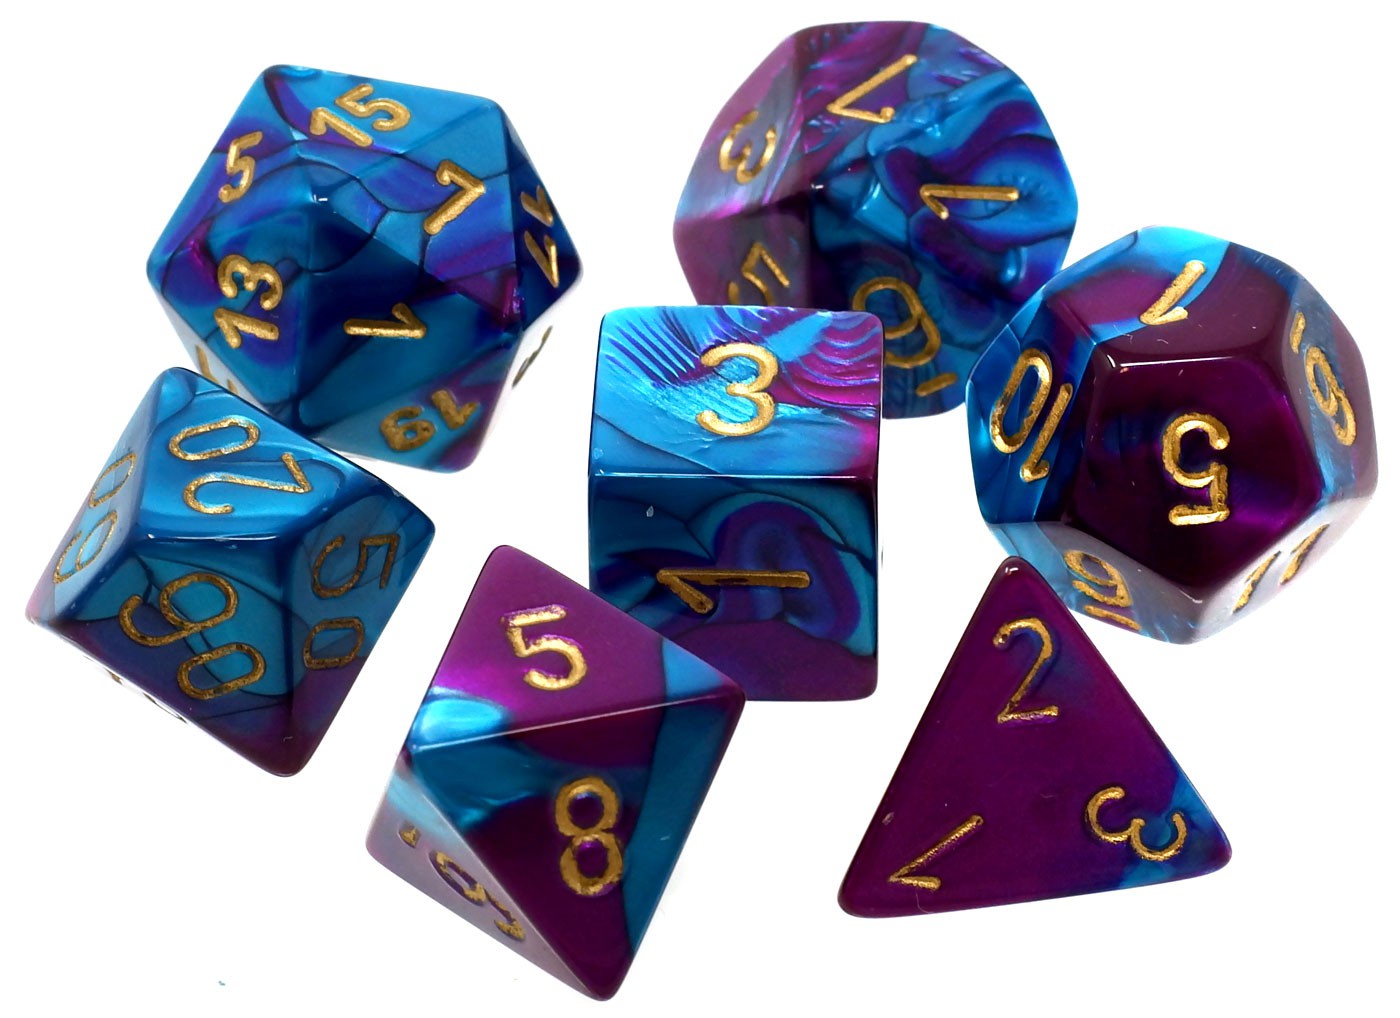 CHX26449 Gemini Purple-teal/Gold 7 die set | Grognard Games